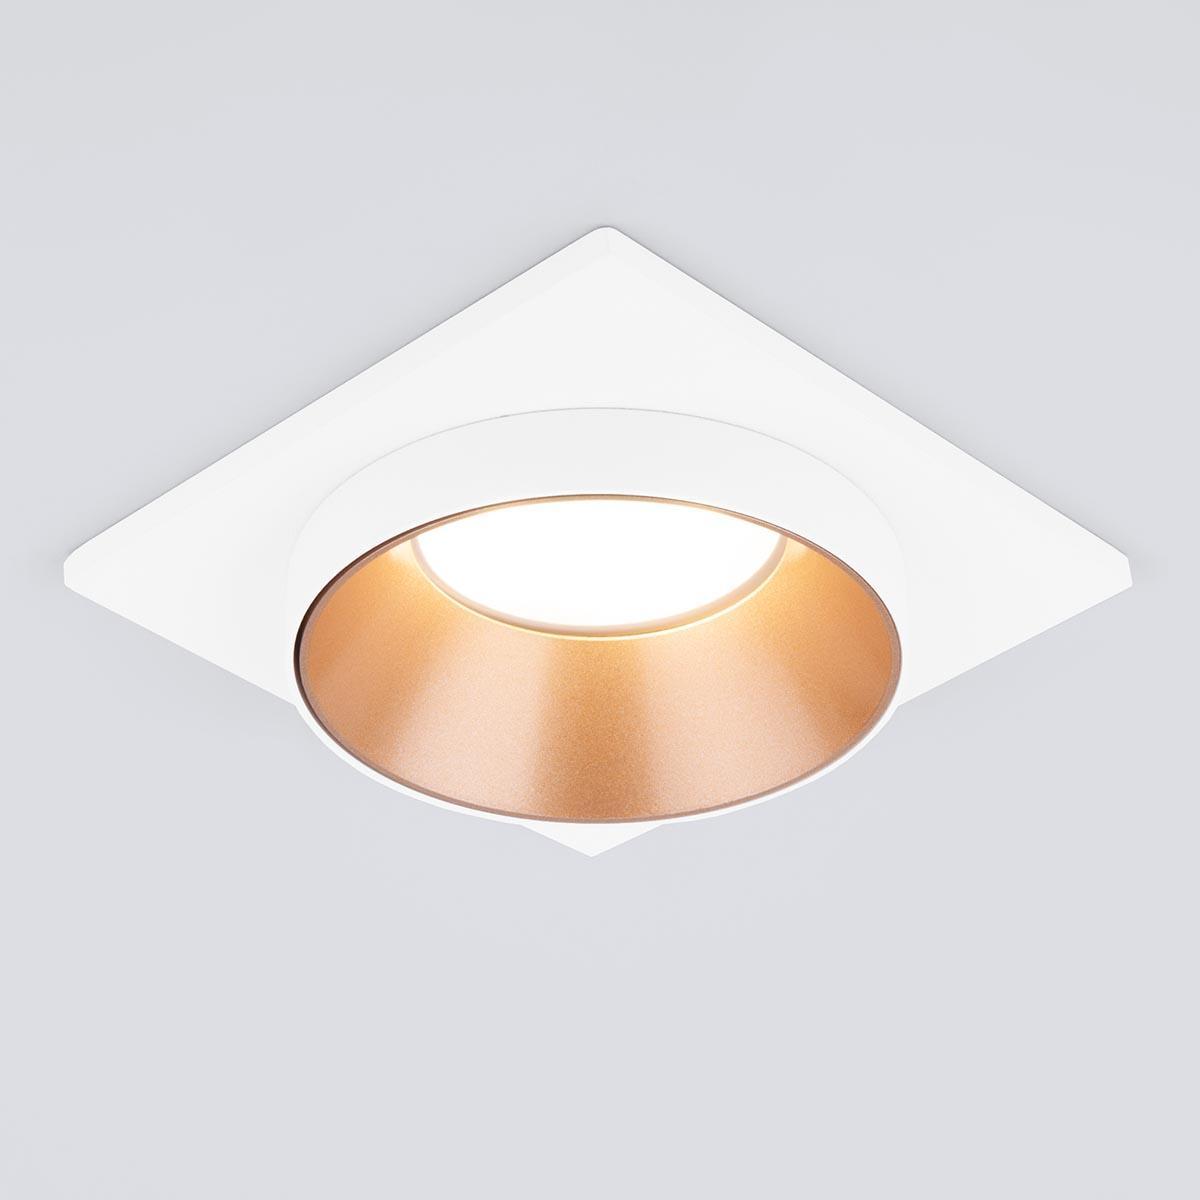 Встраиваемый светильник Elektrostandard 116 MR16 золото/белый a053346